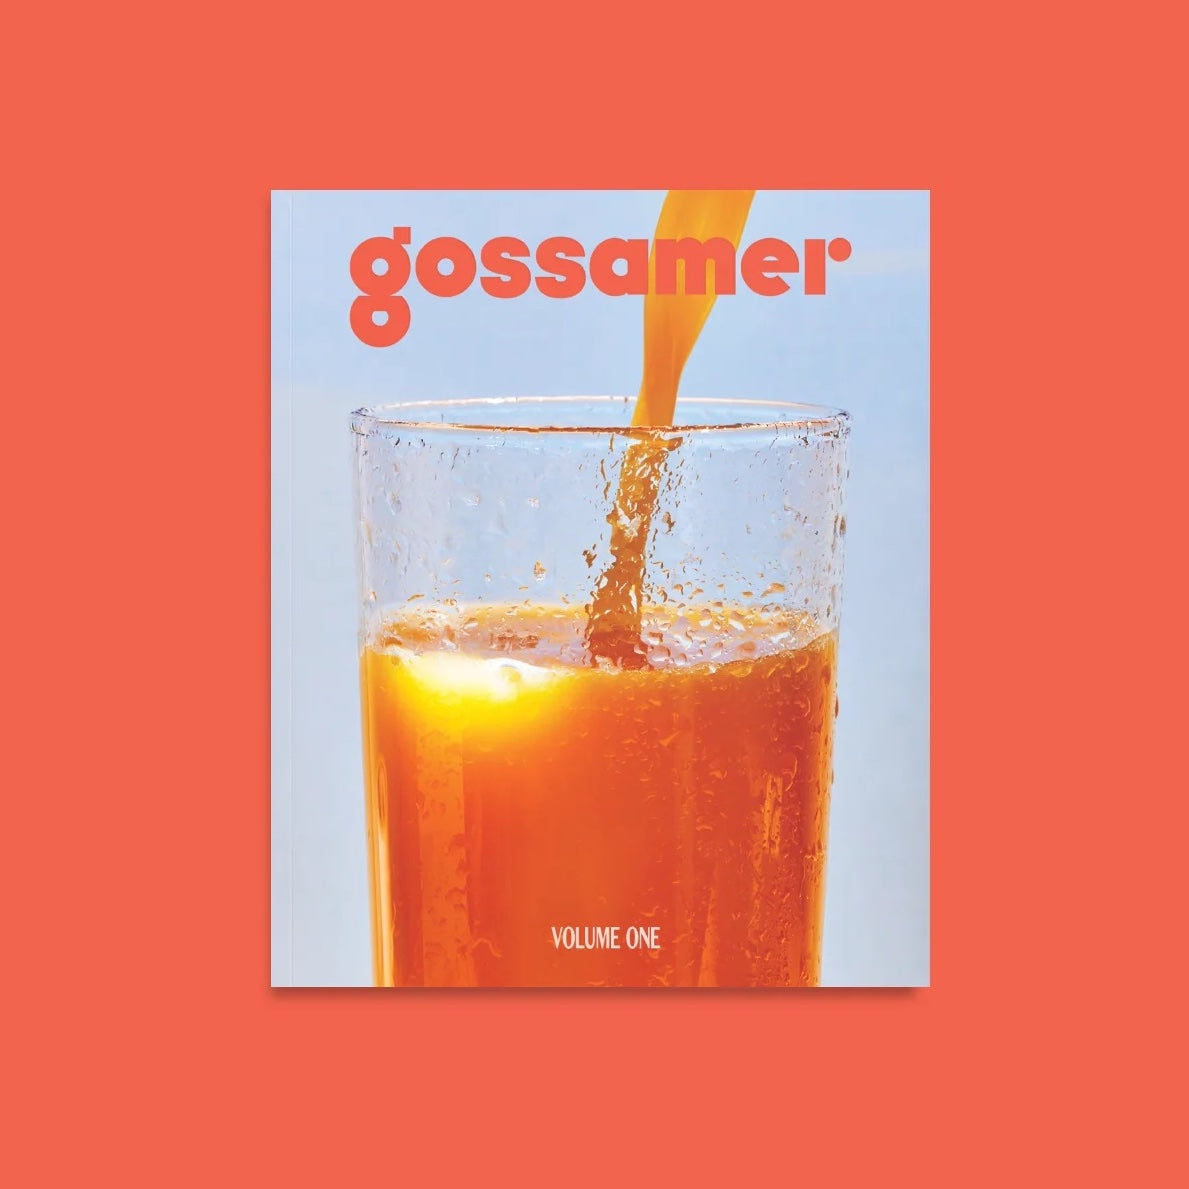 Gossamer Volume 1 High Quality Magazine